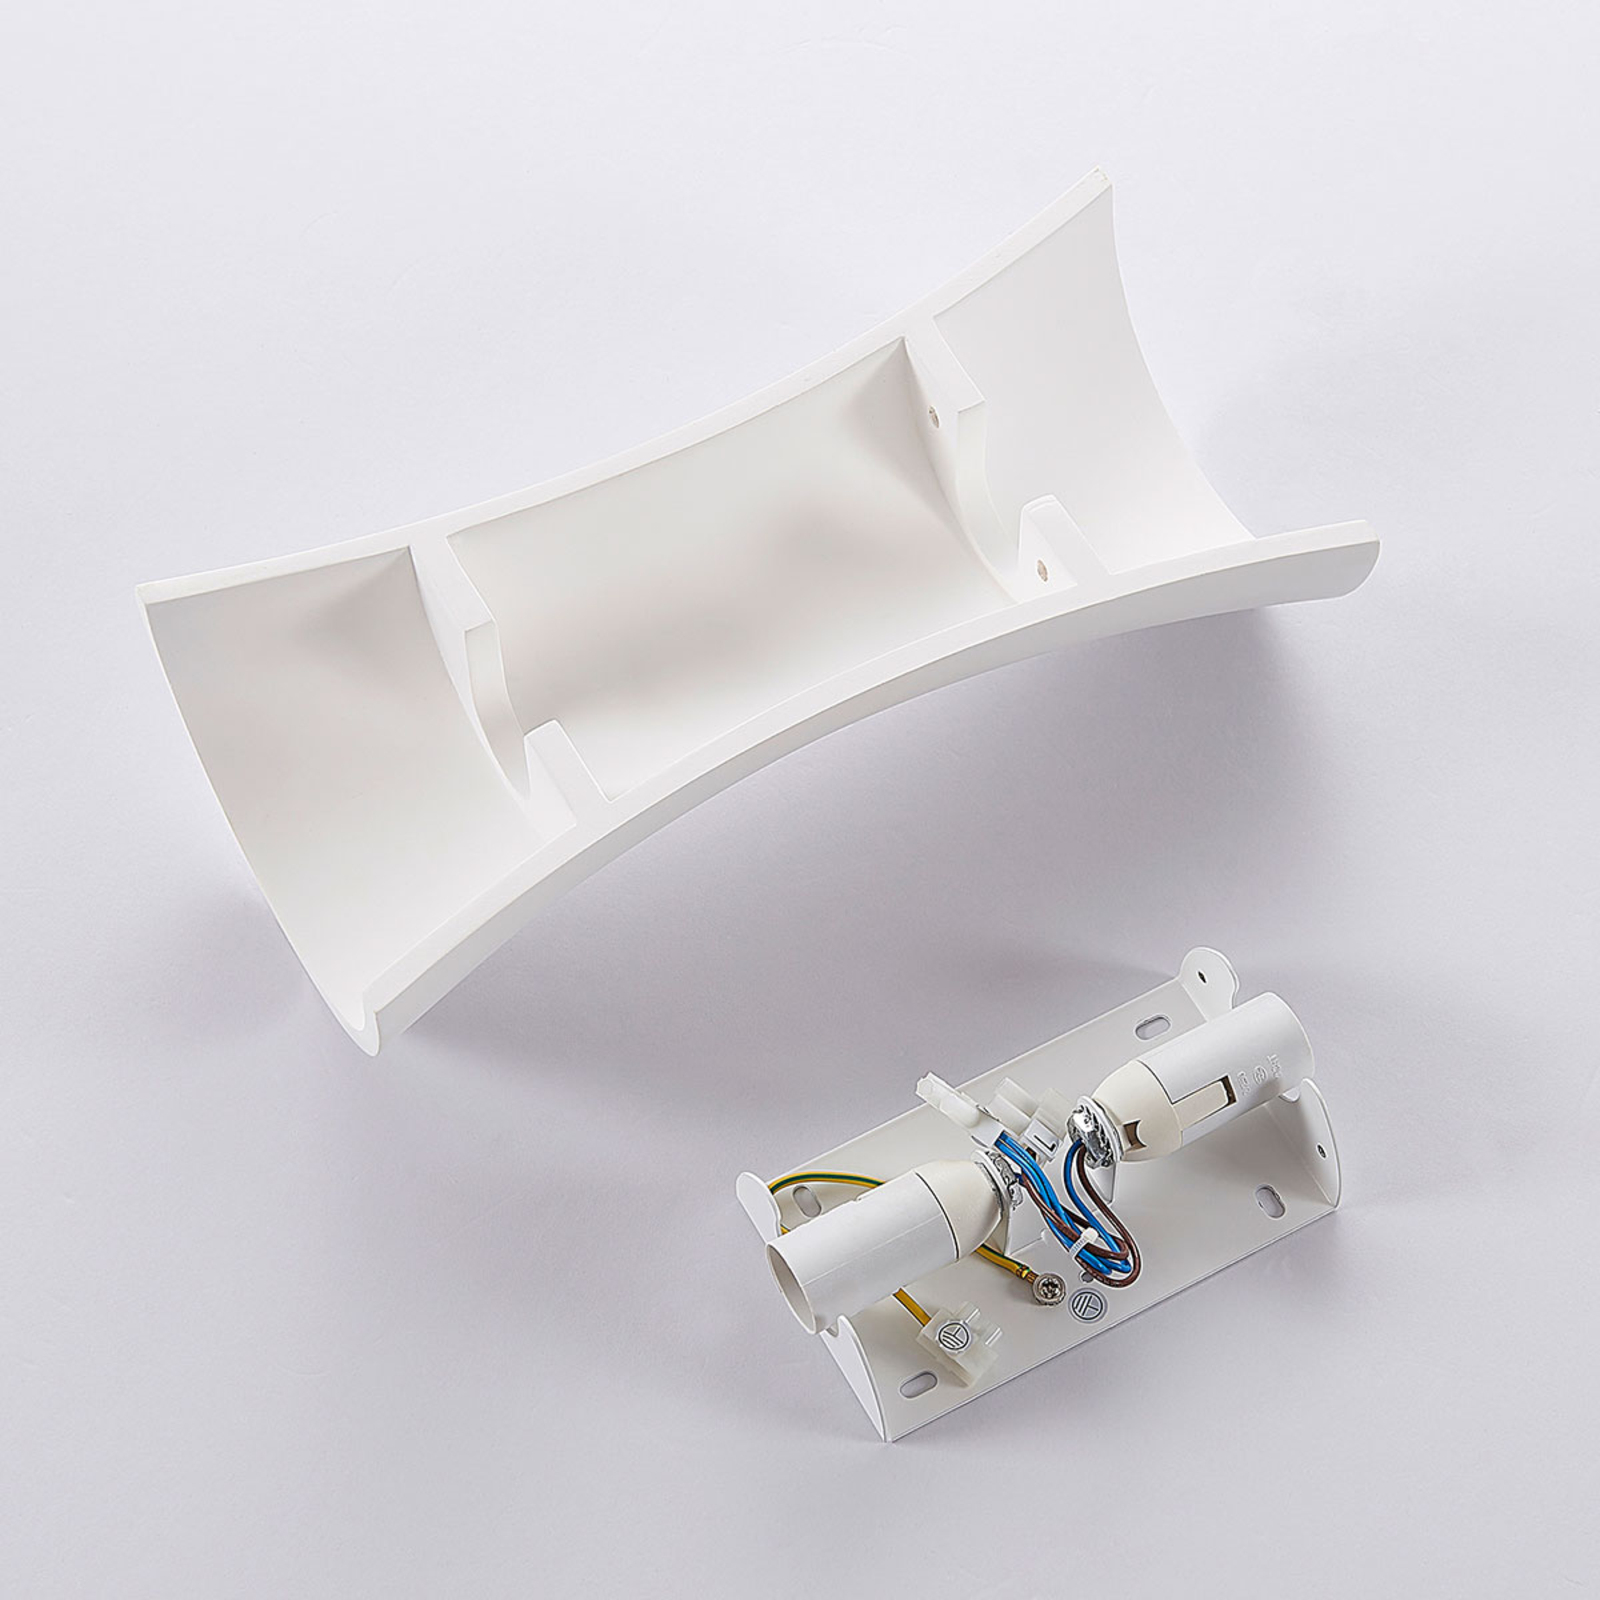 Bílé sádrové nástěnné světlo Edon, konkávní, 30 cm